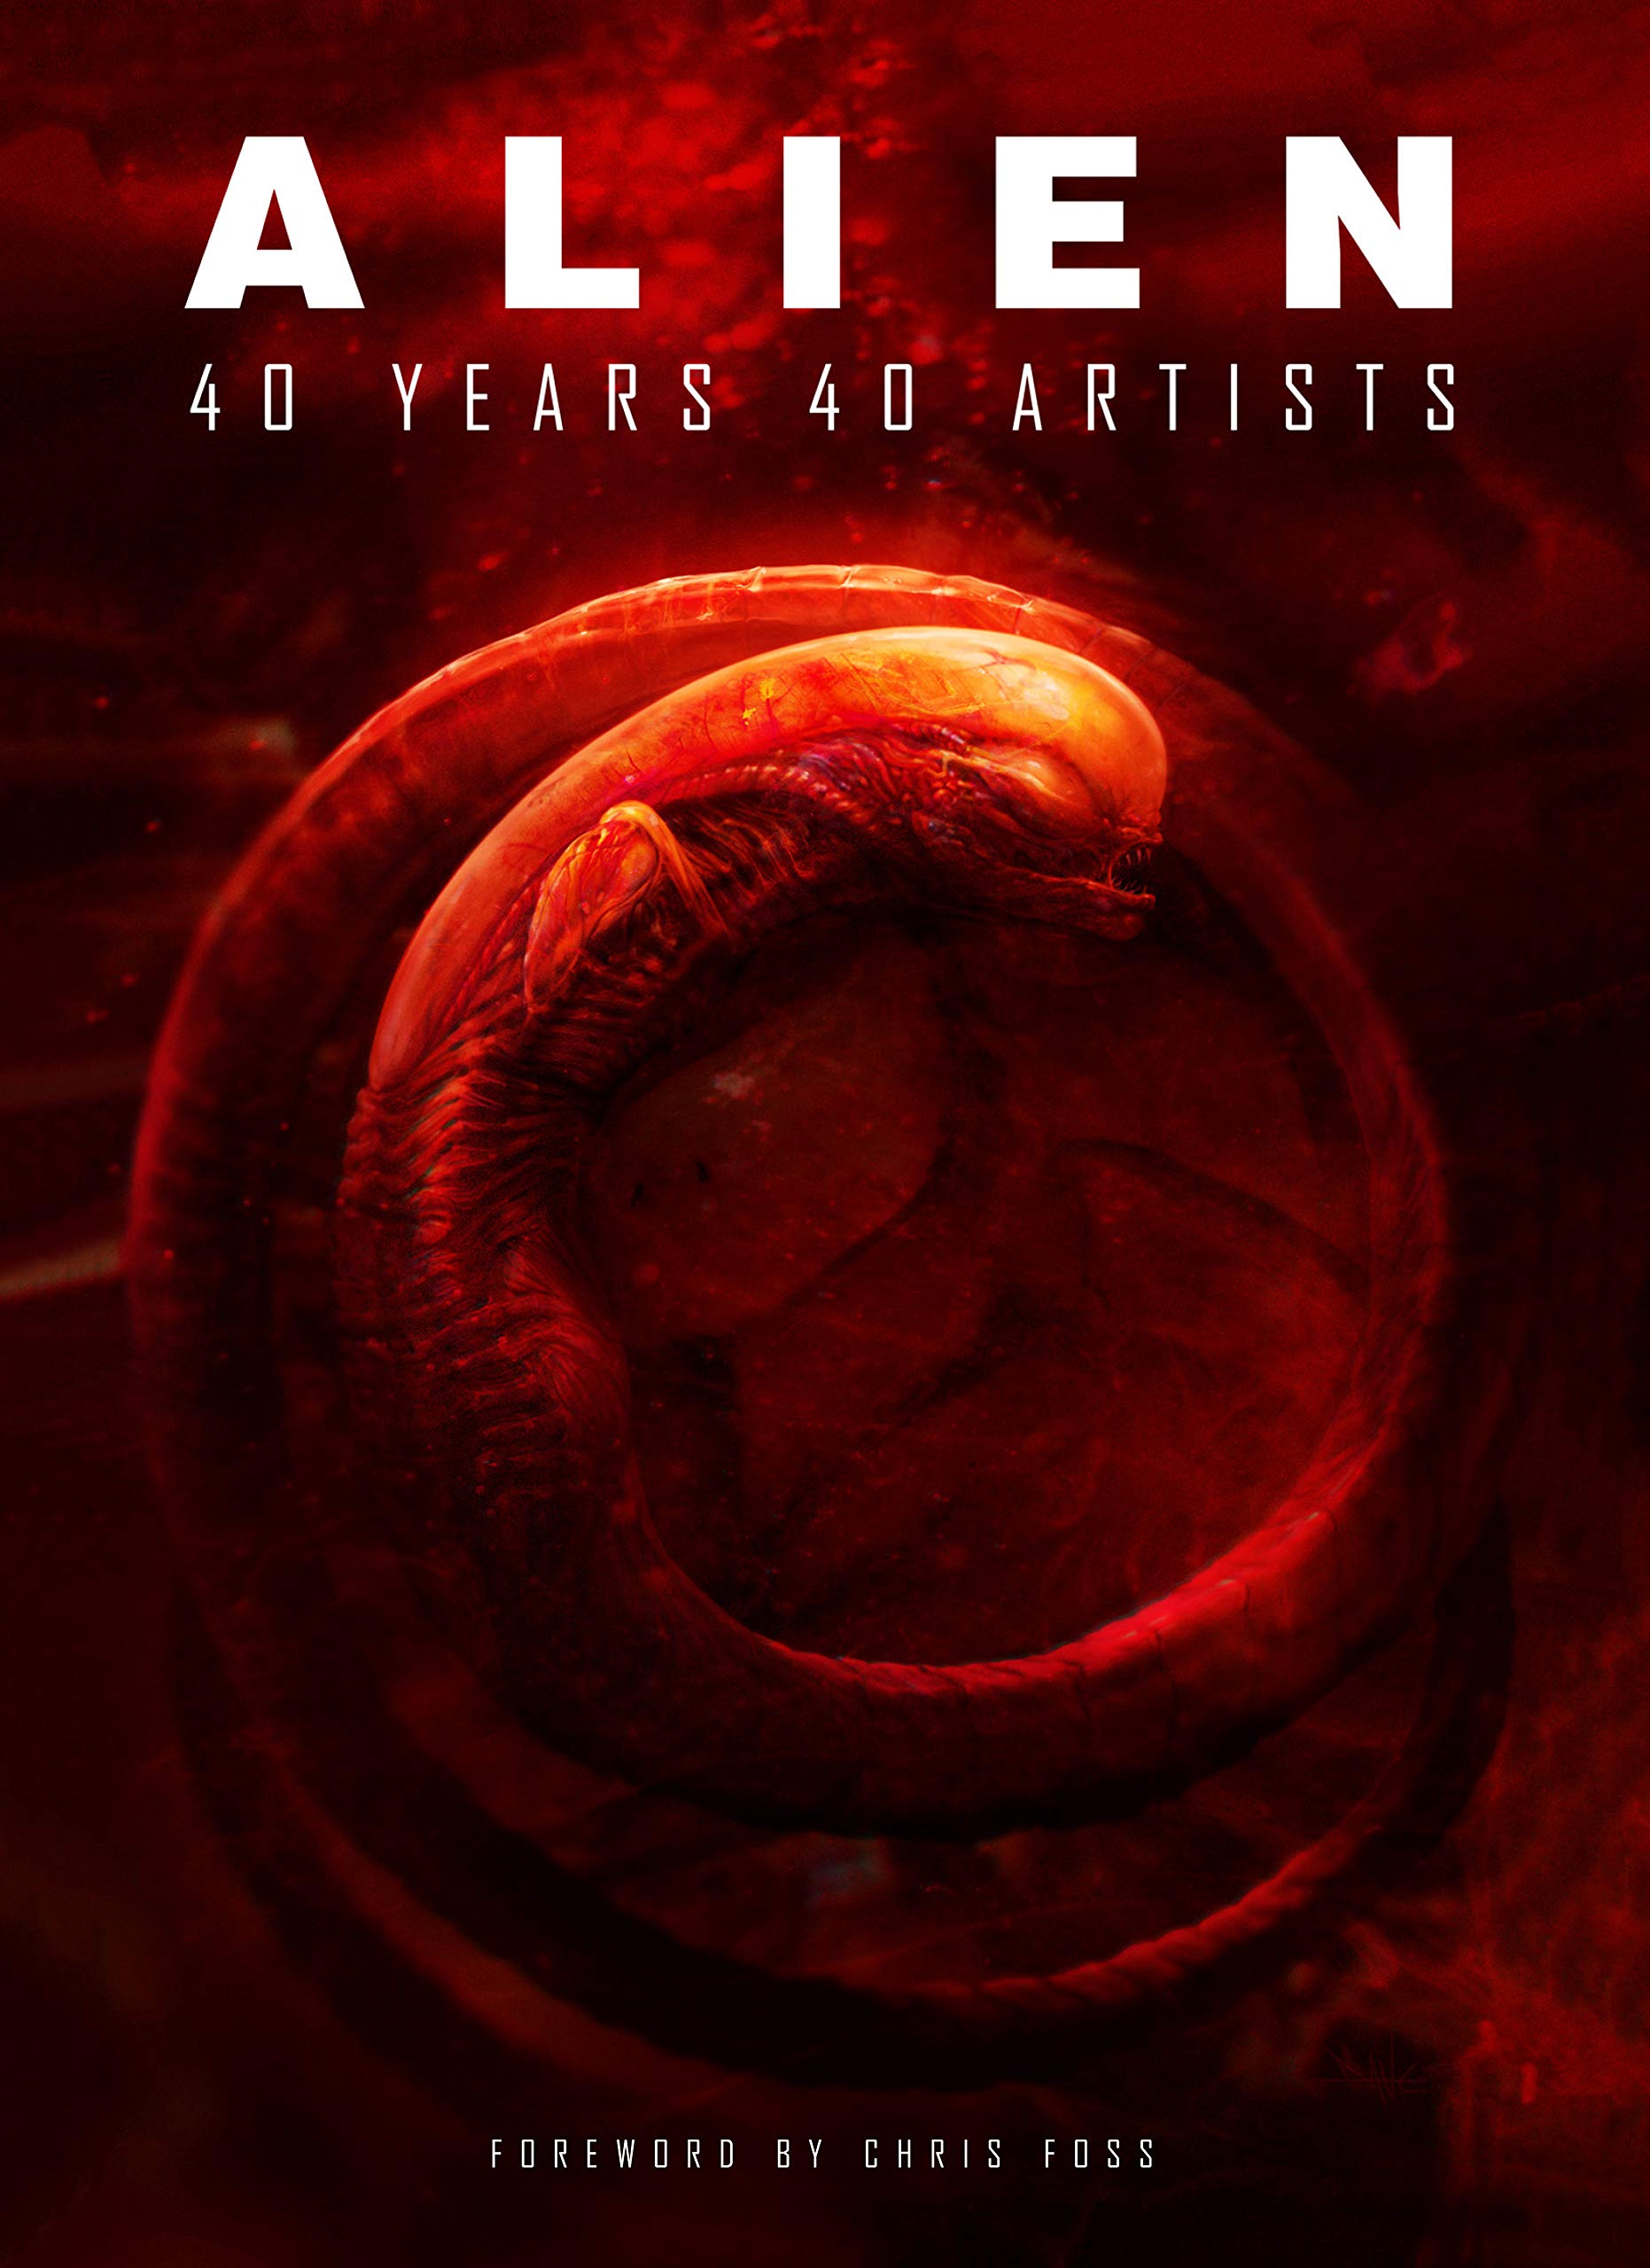 Alien: 40 Years 40 Artists | 